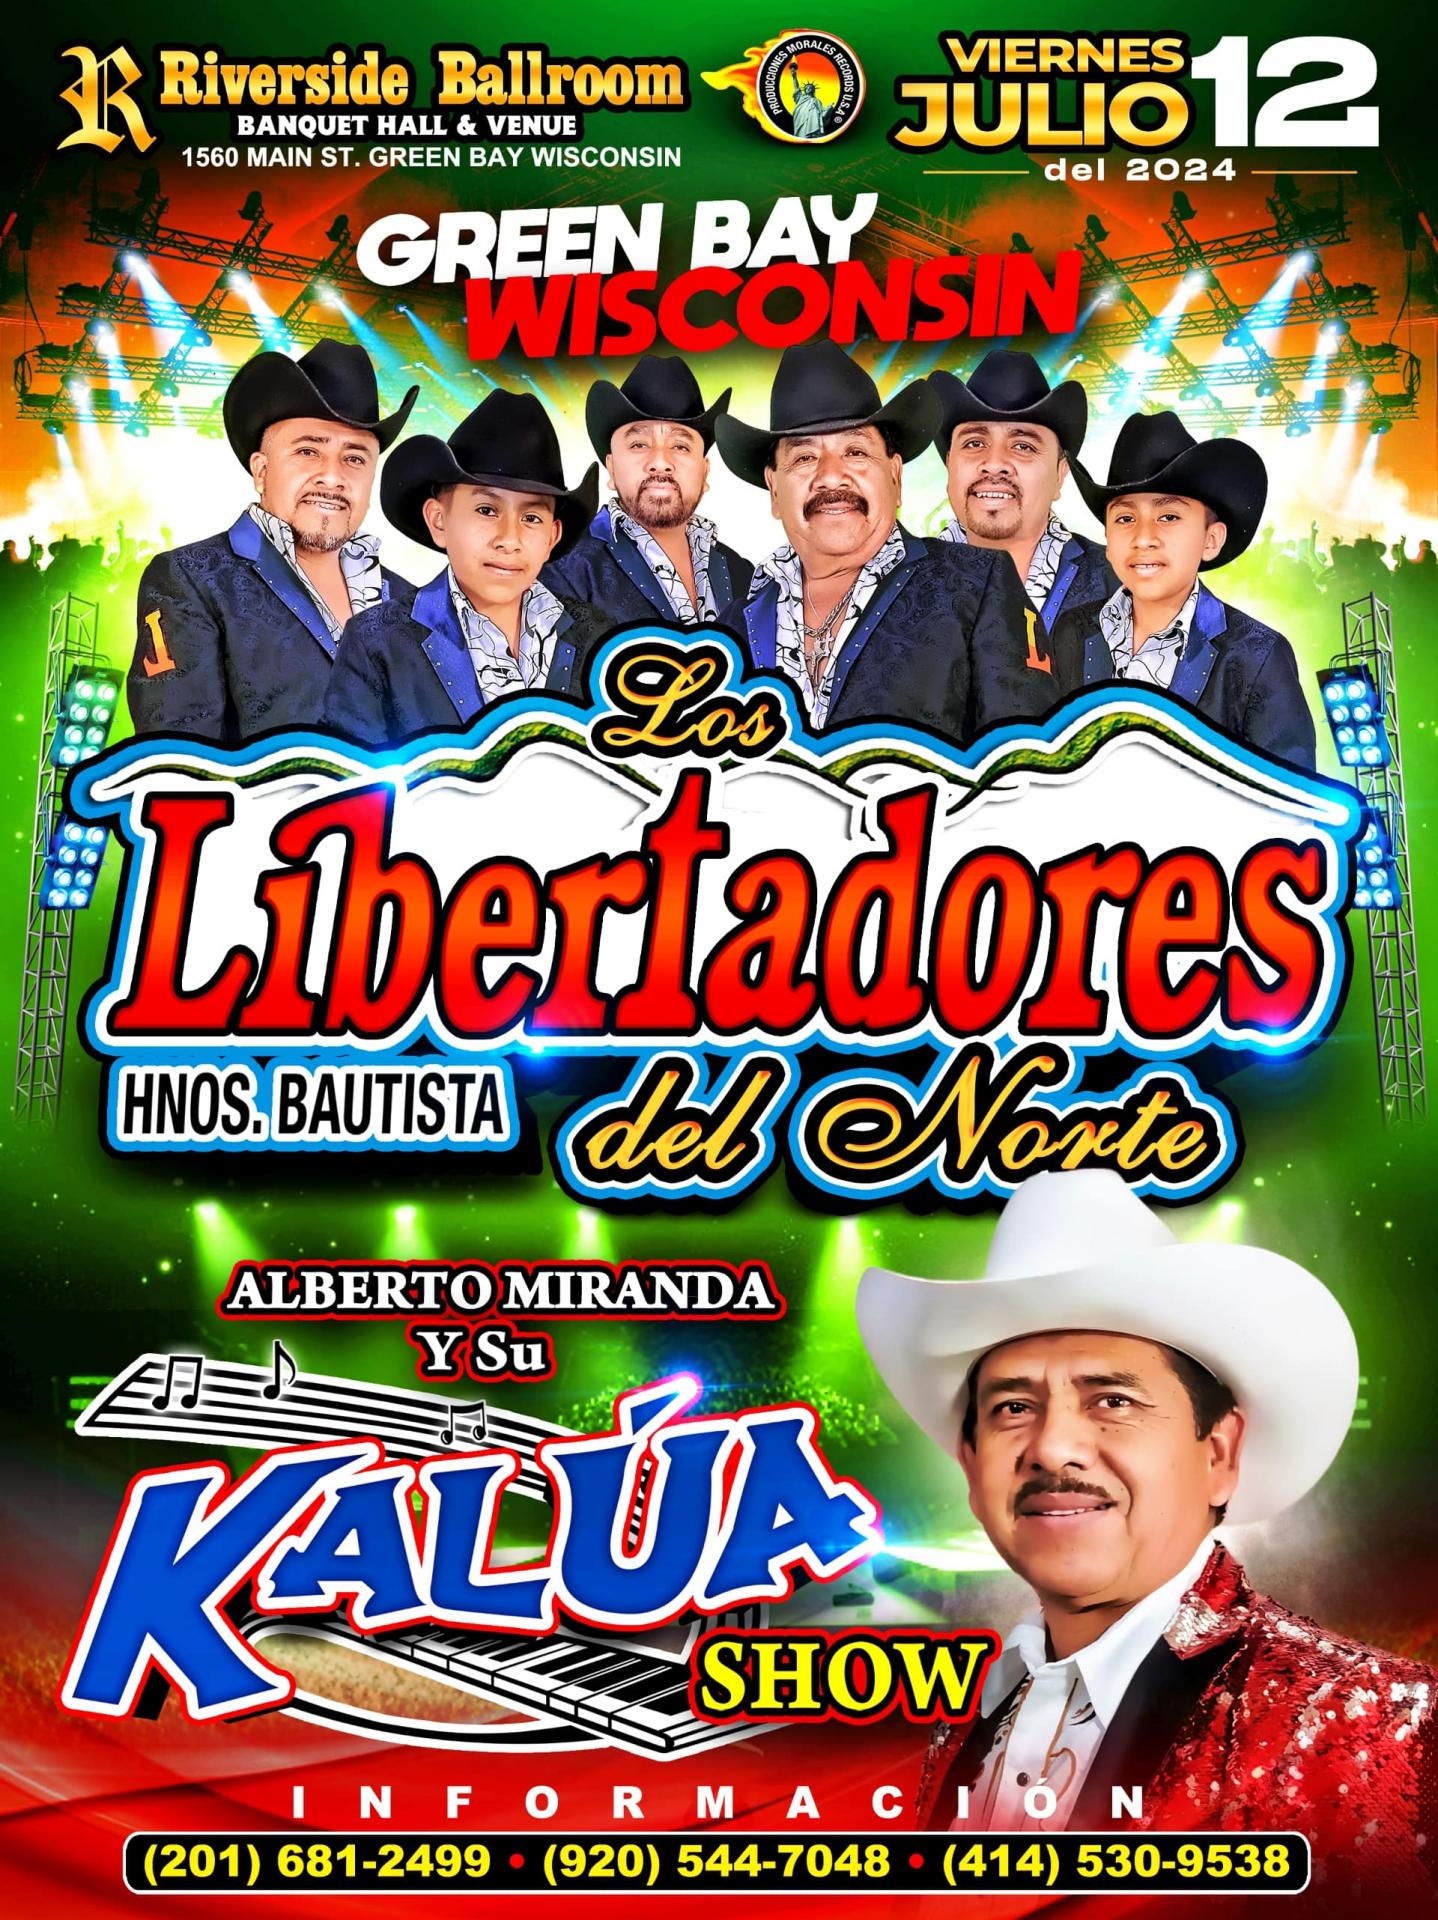 Los Libertadores del Norte & Kalua Show